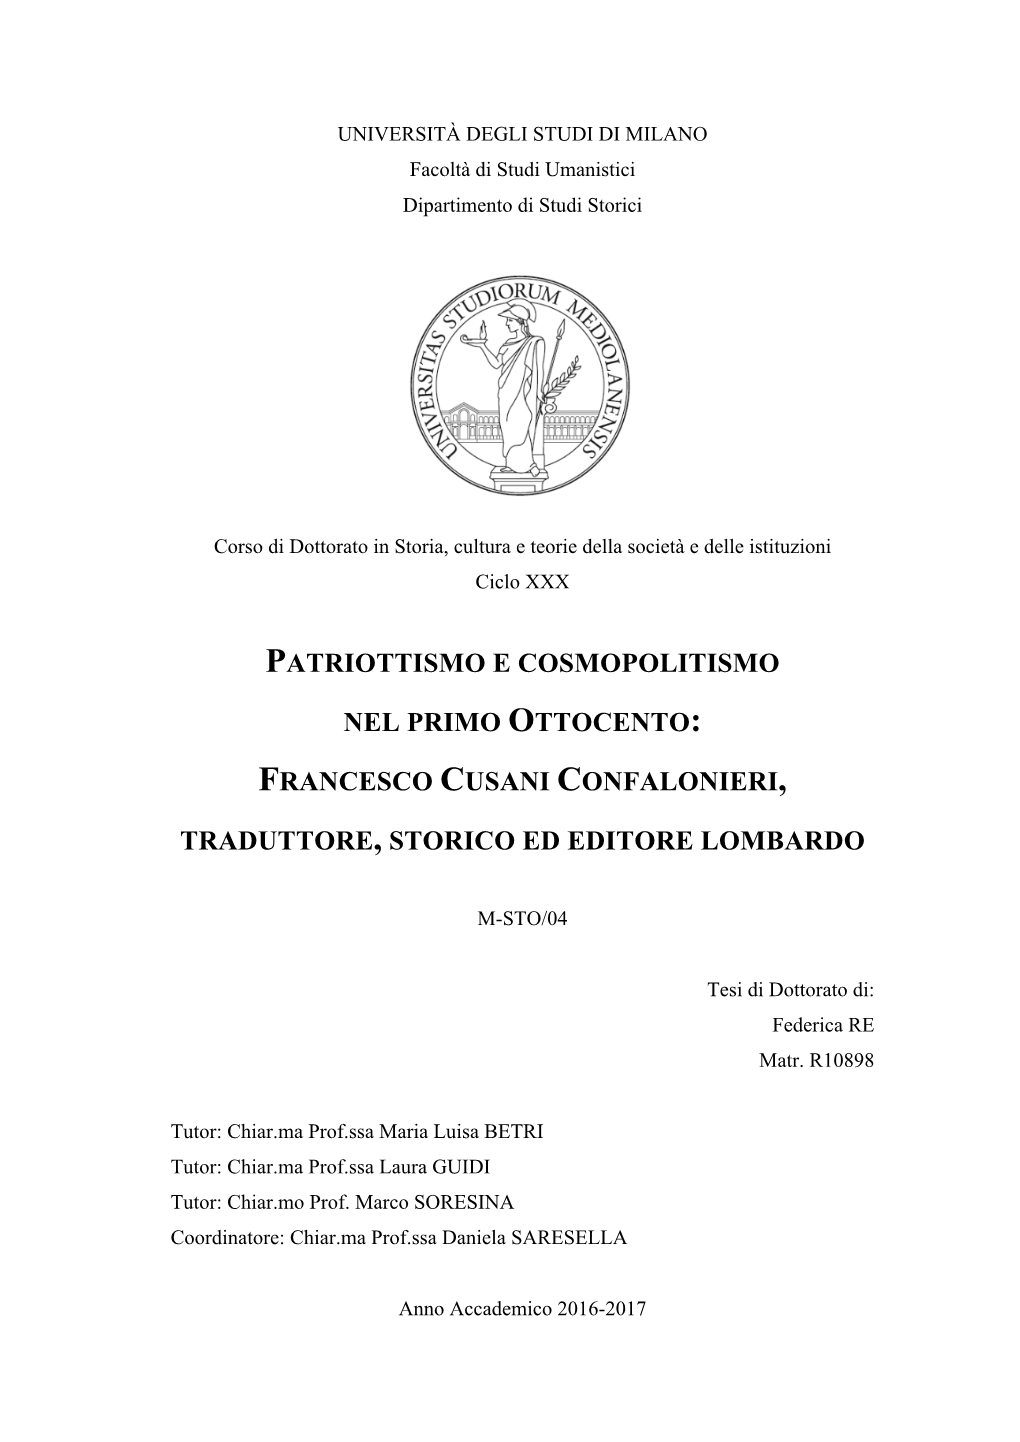 Francesco Cusani Confalonieri, Traduttore, Storico